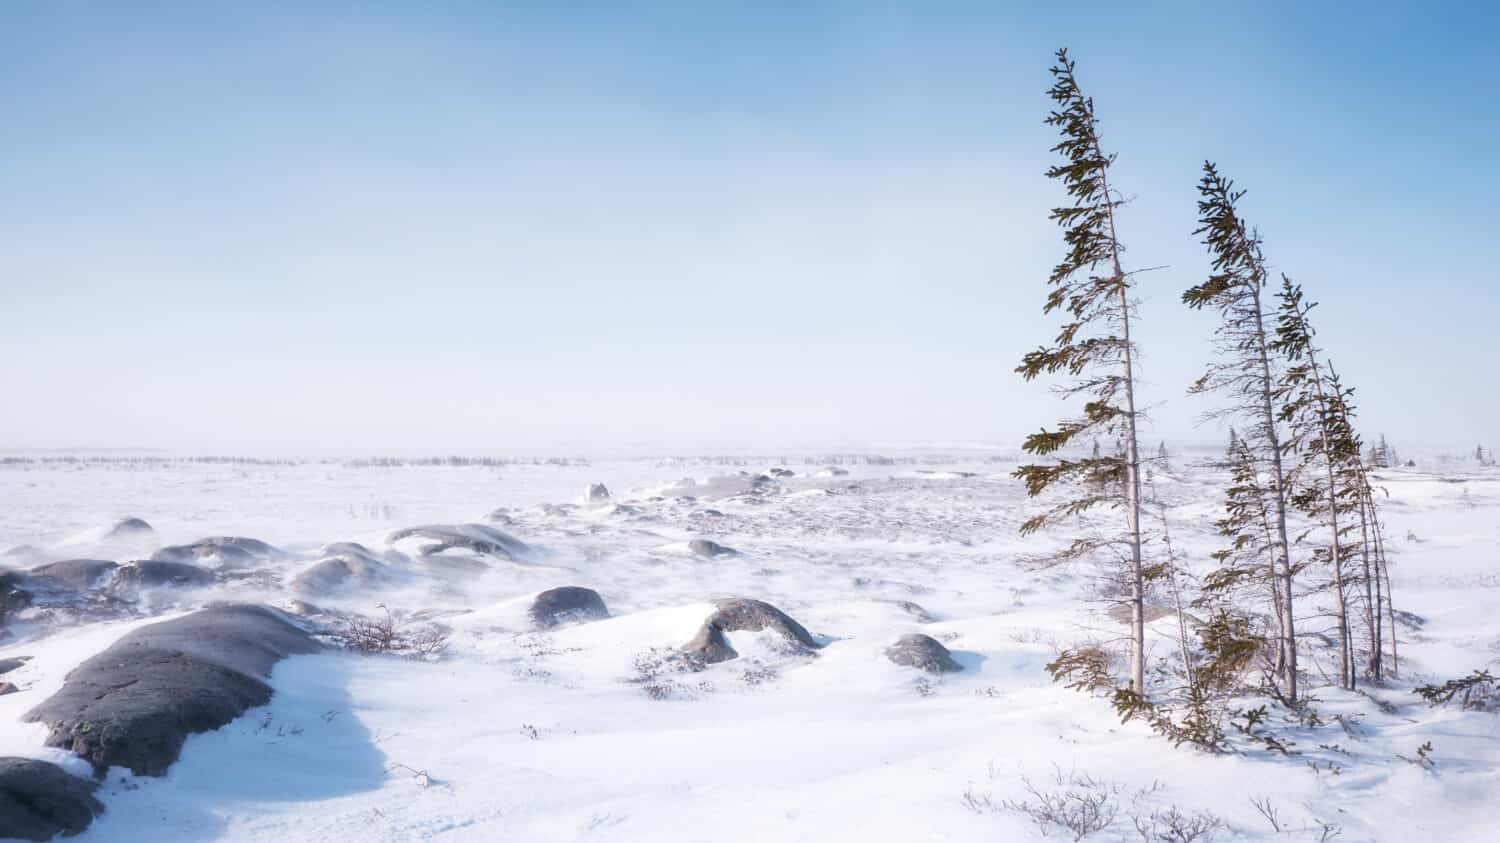 Un paesaggio di tundra spazzato dal vento in una fredda giornata invernale nel nord del Canada, con pochi alberi sottili che lottano per sopravvivere nel terreno arido e nel rigido clima subartico.